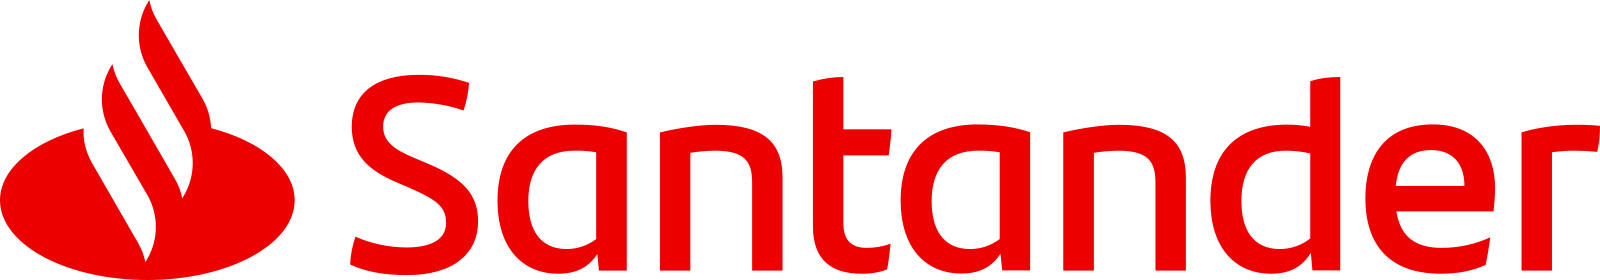 santander logo 4 - Santander Logo